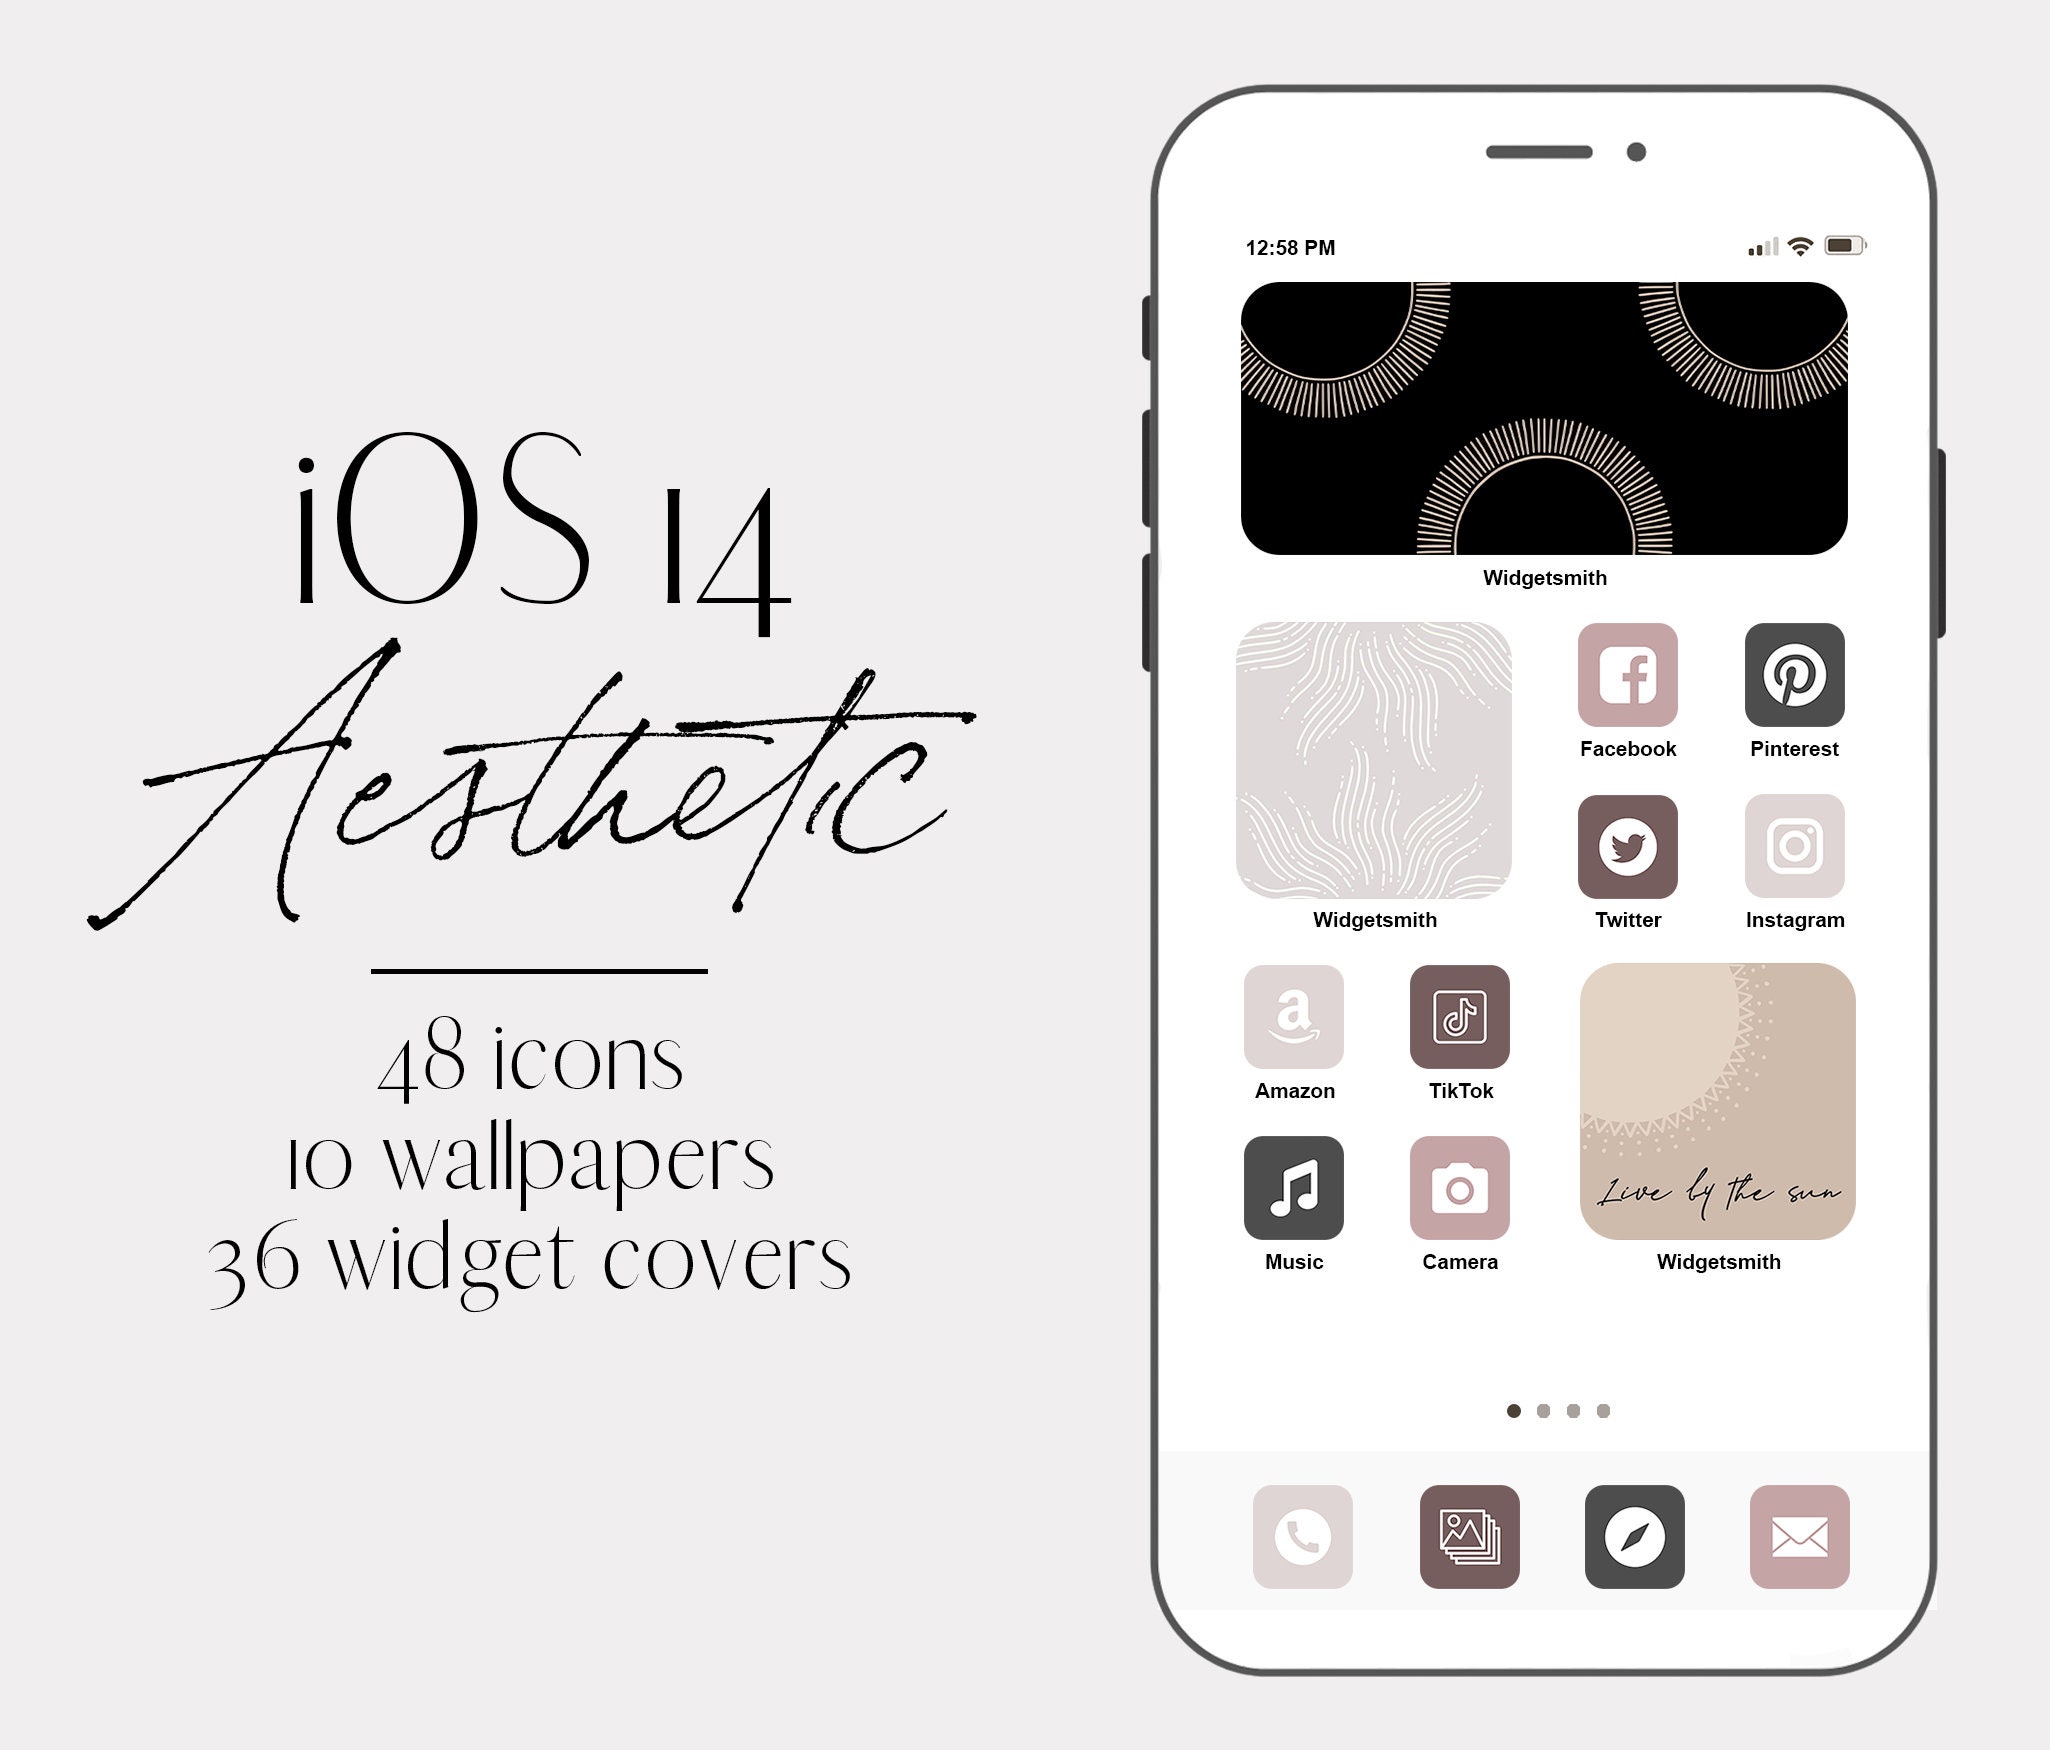 Tùy biến càng nhiều, trải nghiệm sẽ càng tốt hơn! Với iOS 14 biểu tượng ứng dụng, bạn có thể sáng tạo và tùy chỉnh các biểu tượng của mình theo phong cách cá nhân. Khám phá những thiết kế đẹp mắt và mang tính cá nhân, giúp cho chiếc iPhone của bạn trở nên độc đáo hơn bao giờ hết.